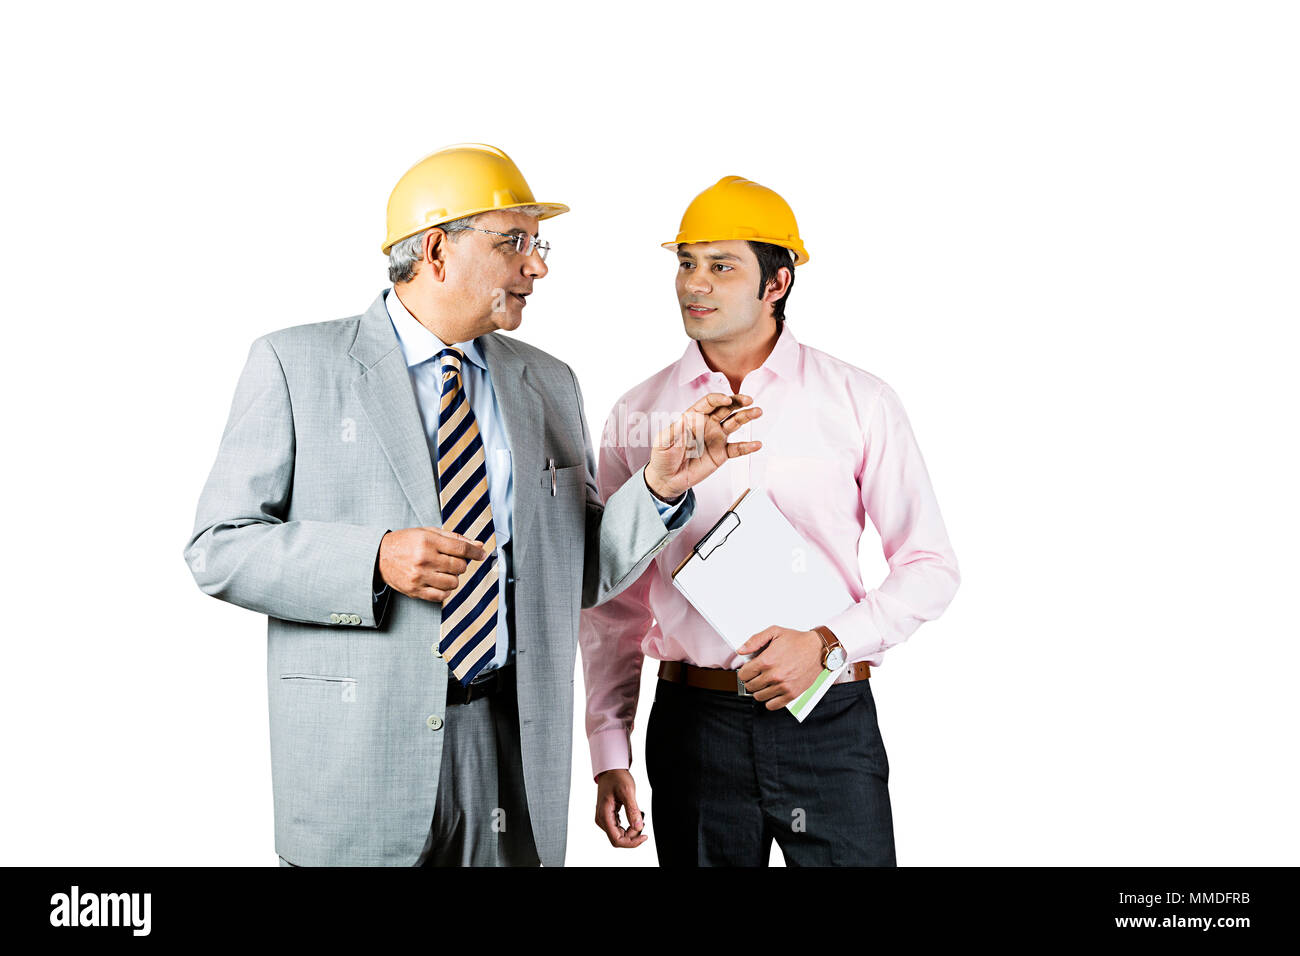 Zwei Männer, Architekten, Techniker sprechen Diskussionsrunde Strategie Neues Projekt Stockfoto